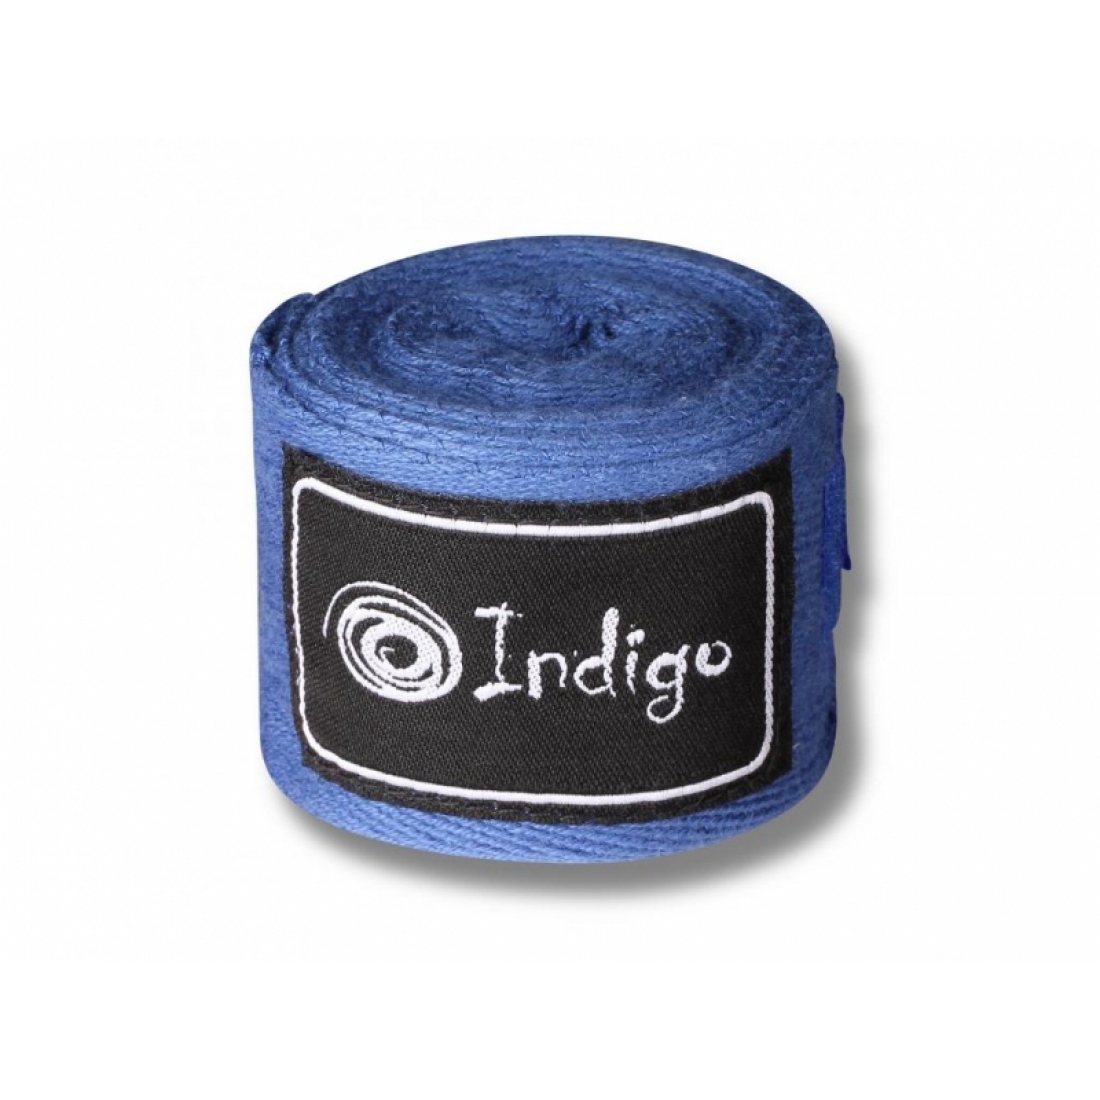 Бинты боксерские Indigo, длина 2,5 м, материал х/б, эластан, цвет синий